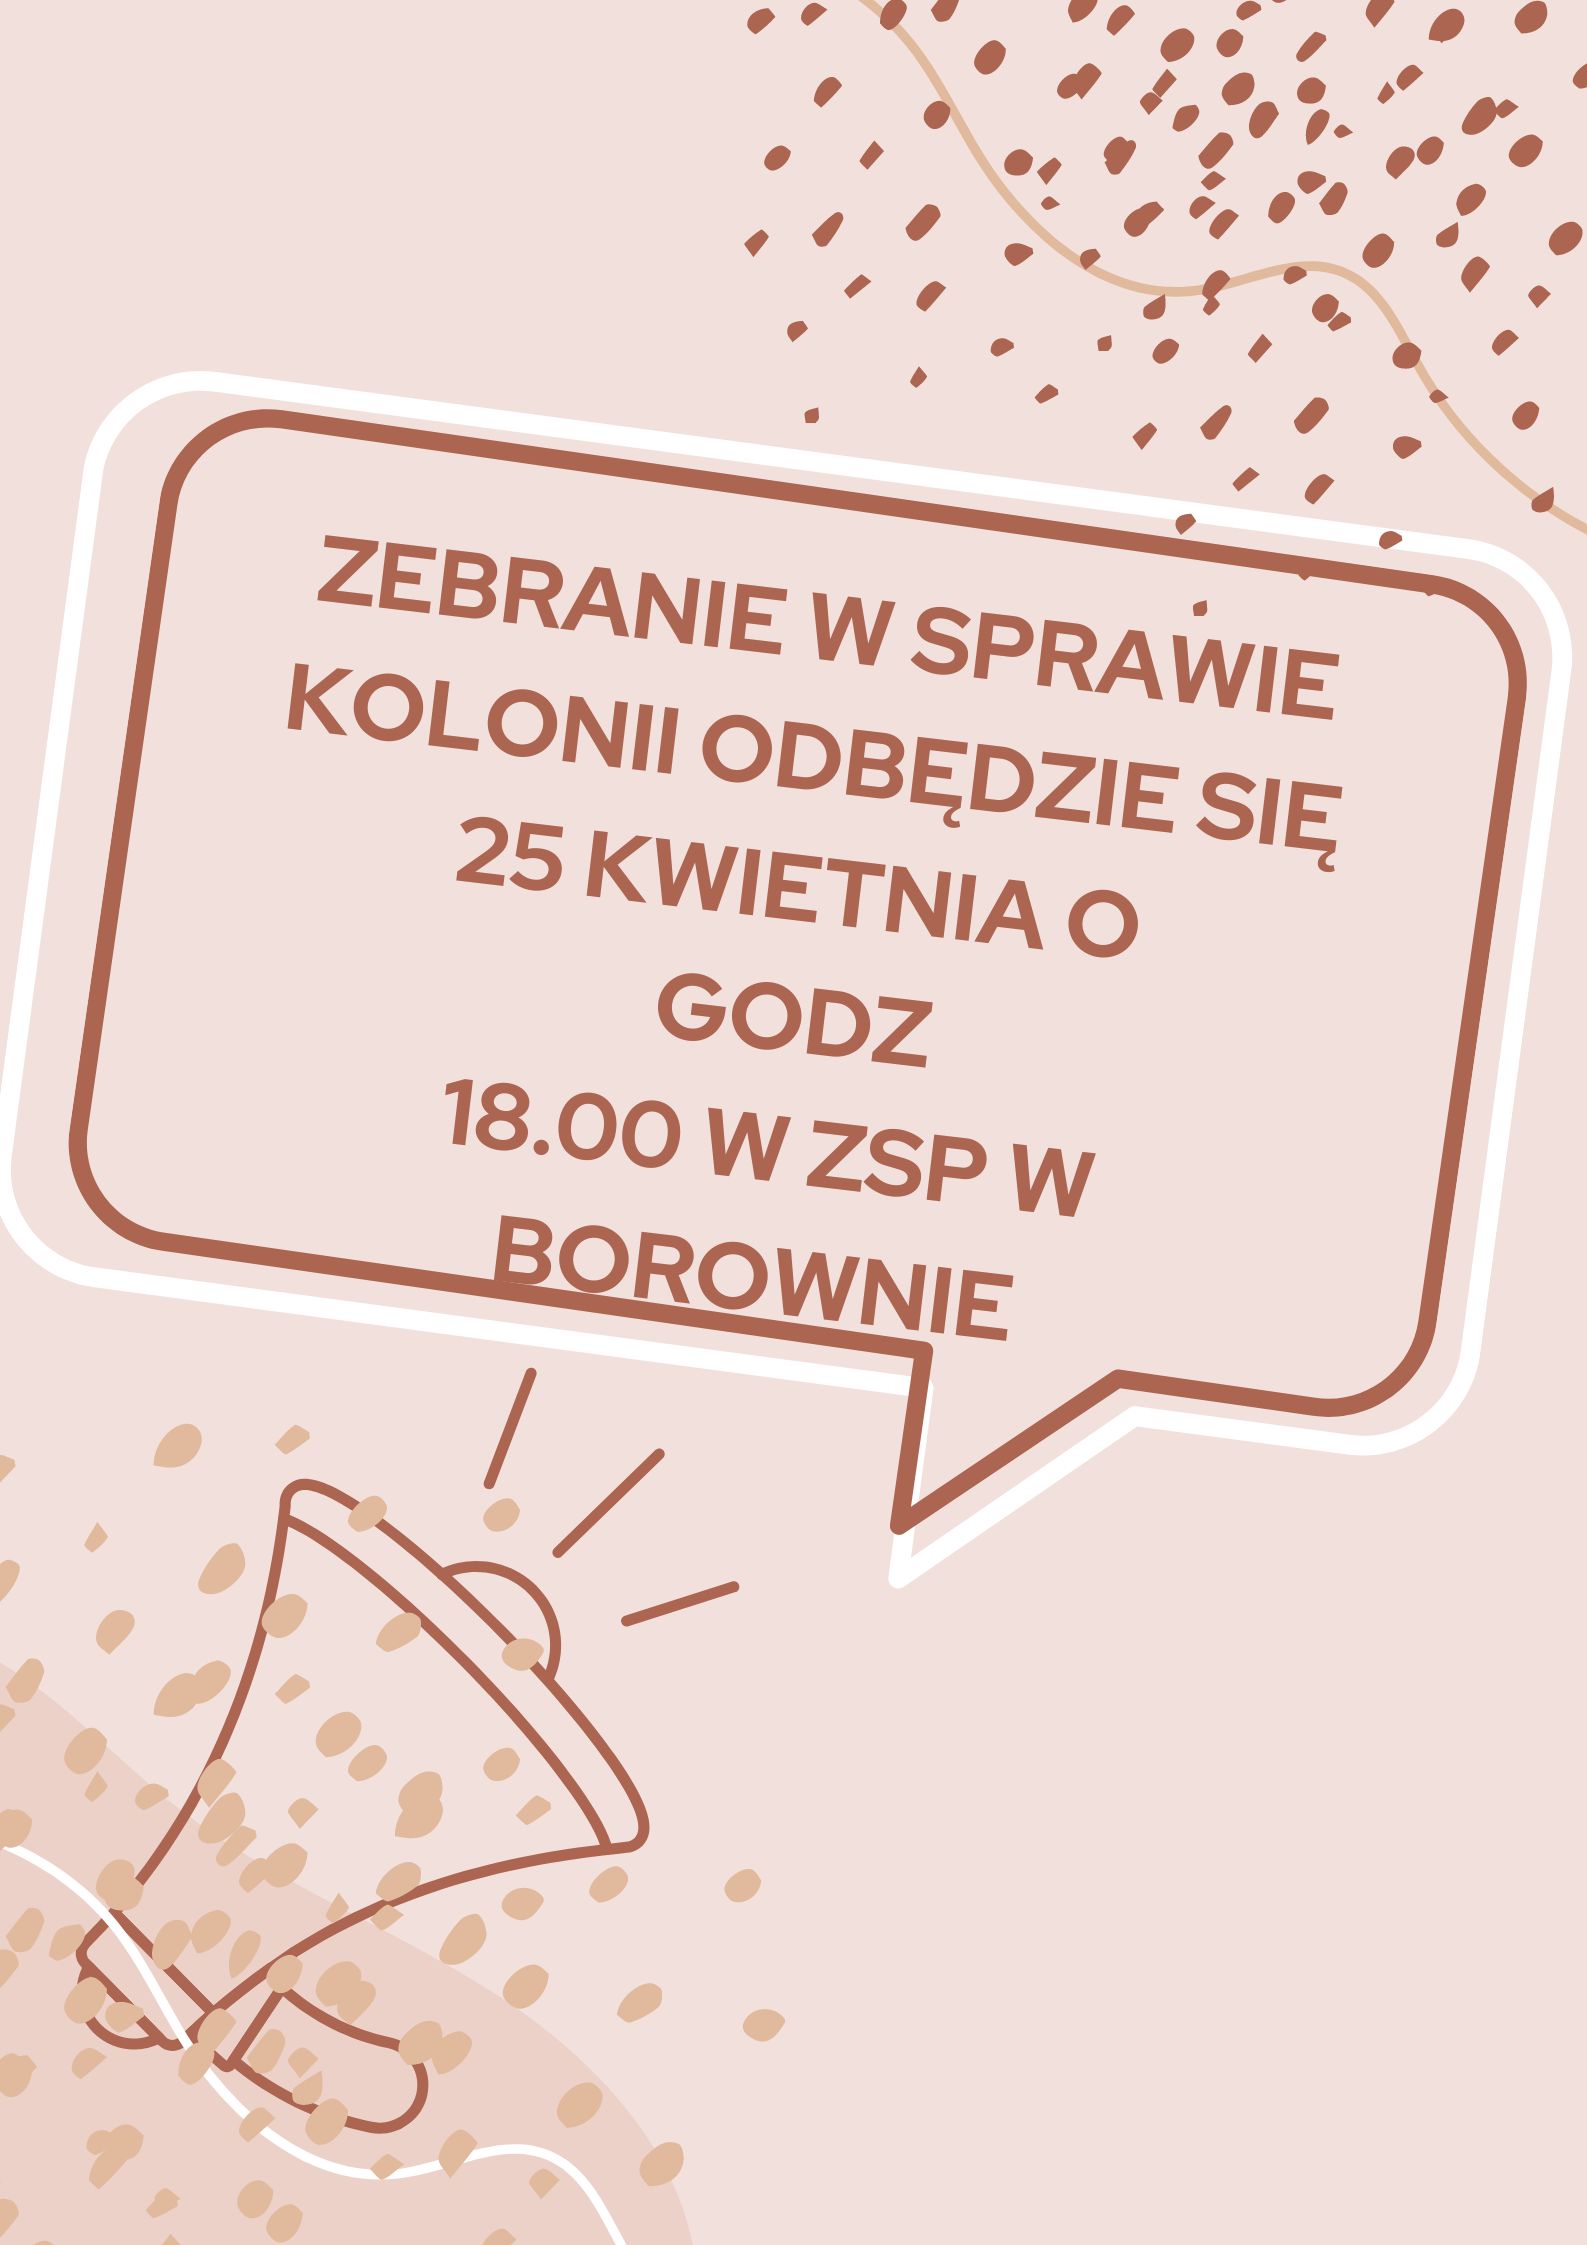 Zebranie w sprawie kolonii odbędzie się 25 kwietniao godzinei 18.00 w ZSP w Borownie